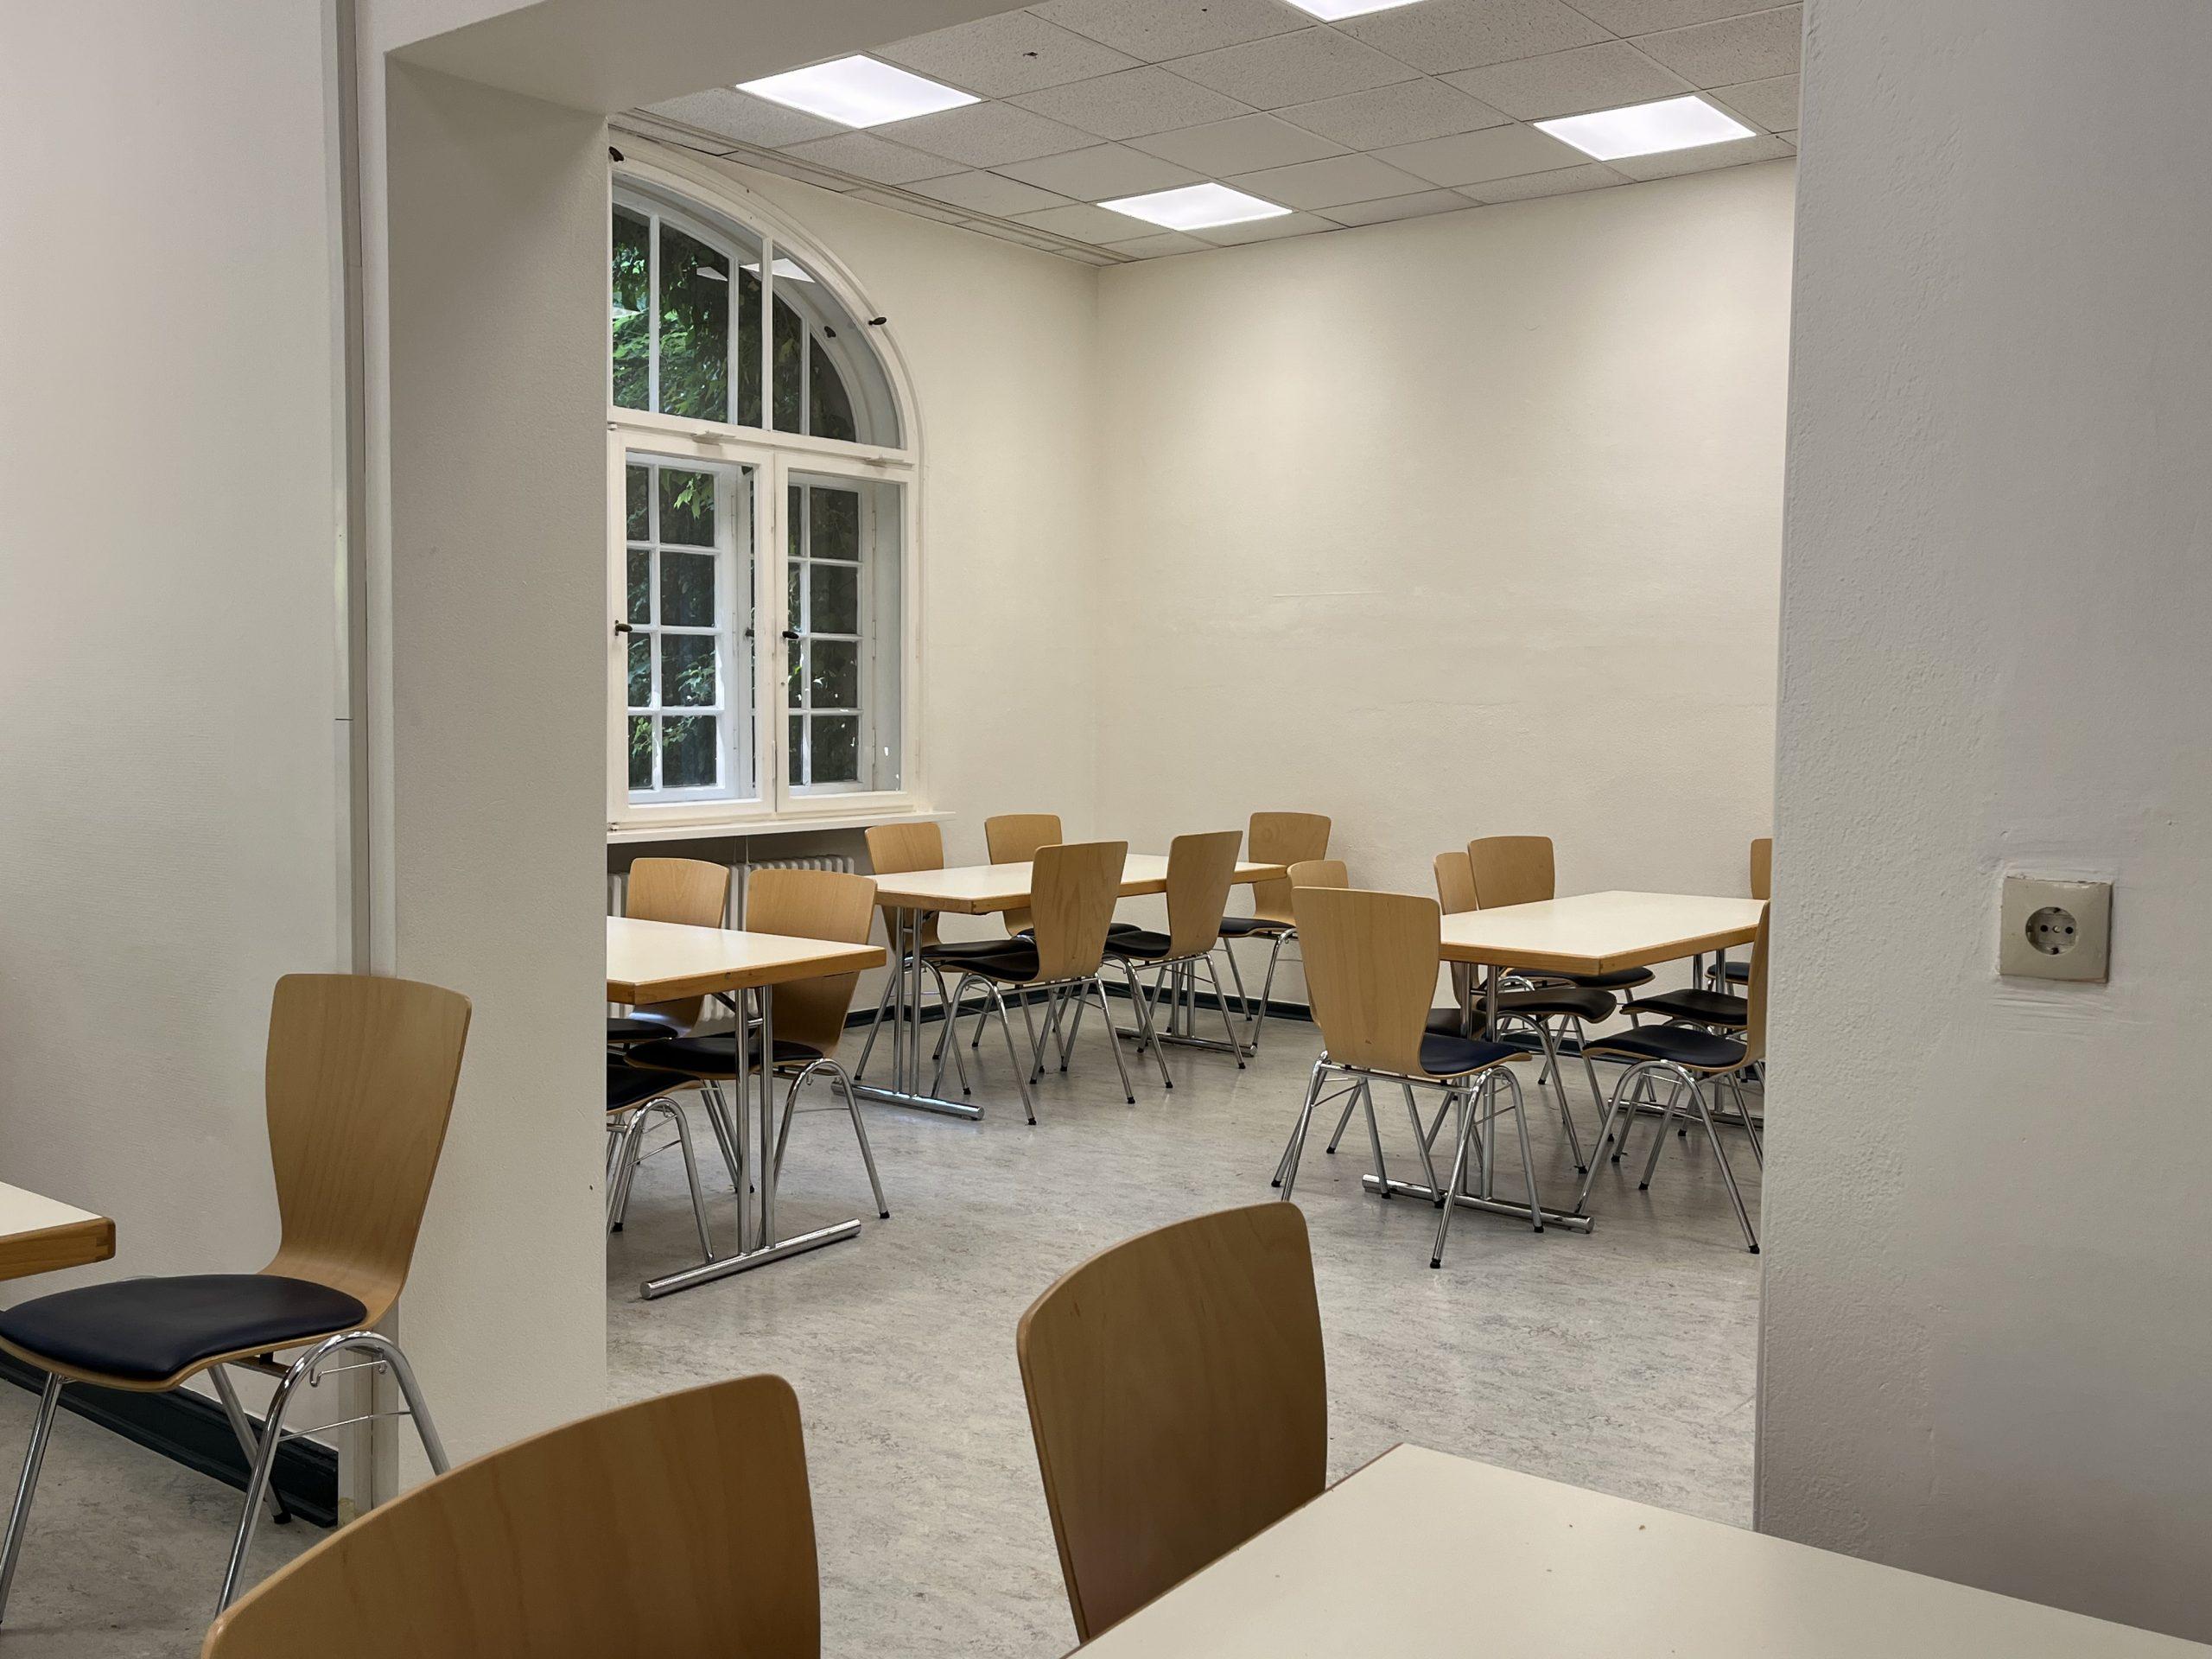 Zwei durch einen großen Durchbruch miteinander verbundene Räume: Weiße Wände, moderne weiße Tische und Stühle aus hellem Holz mit dunkelgrau gepolsterten Sitzflächen.